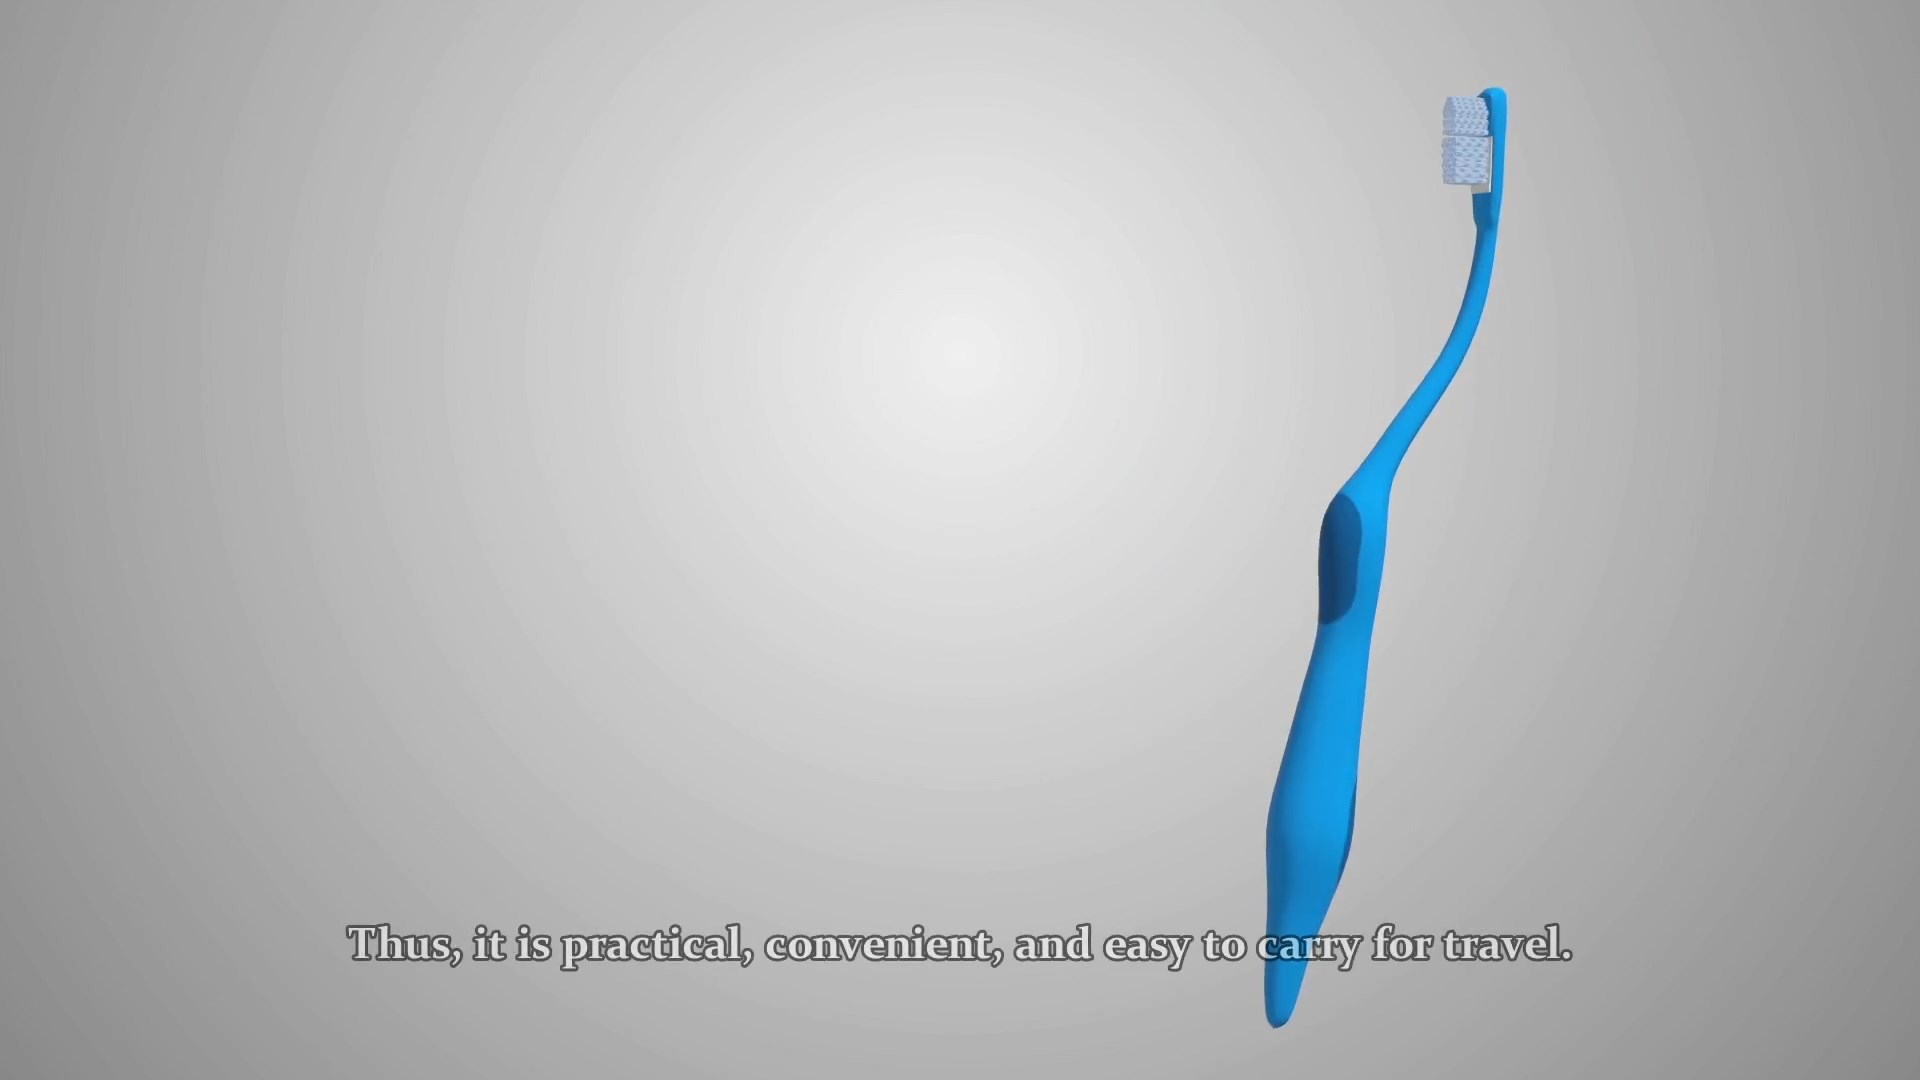 Kendinden Macunlu Diş Fırçası 3D Animasyon Filmi 2 - Kendinden Macunlu Diş Fırçası 3D Animasyon Filmi